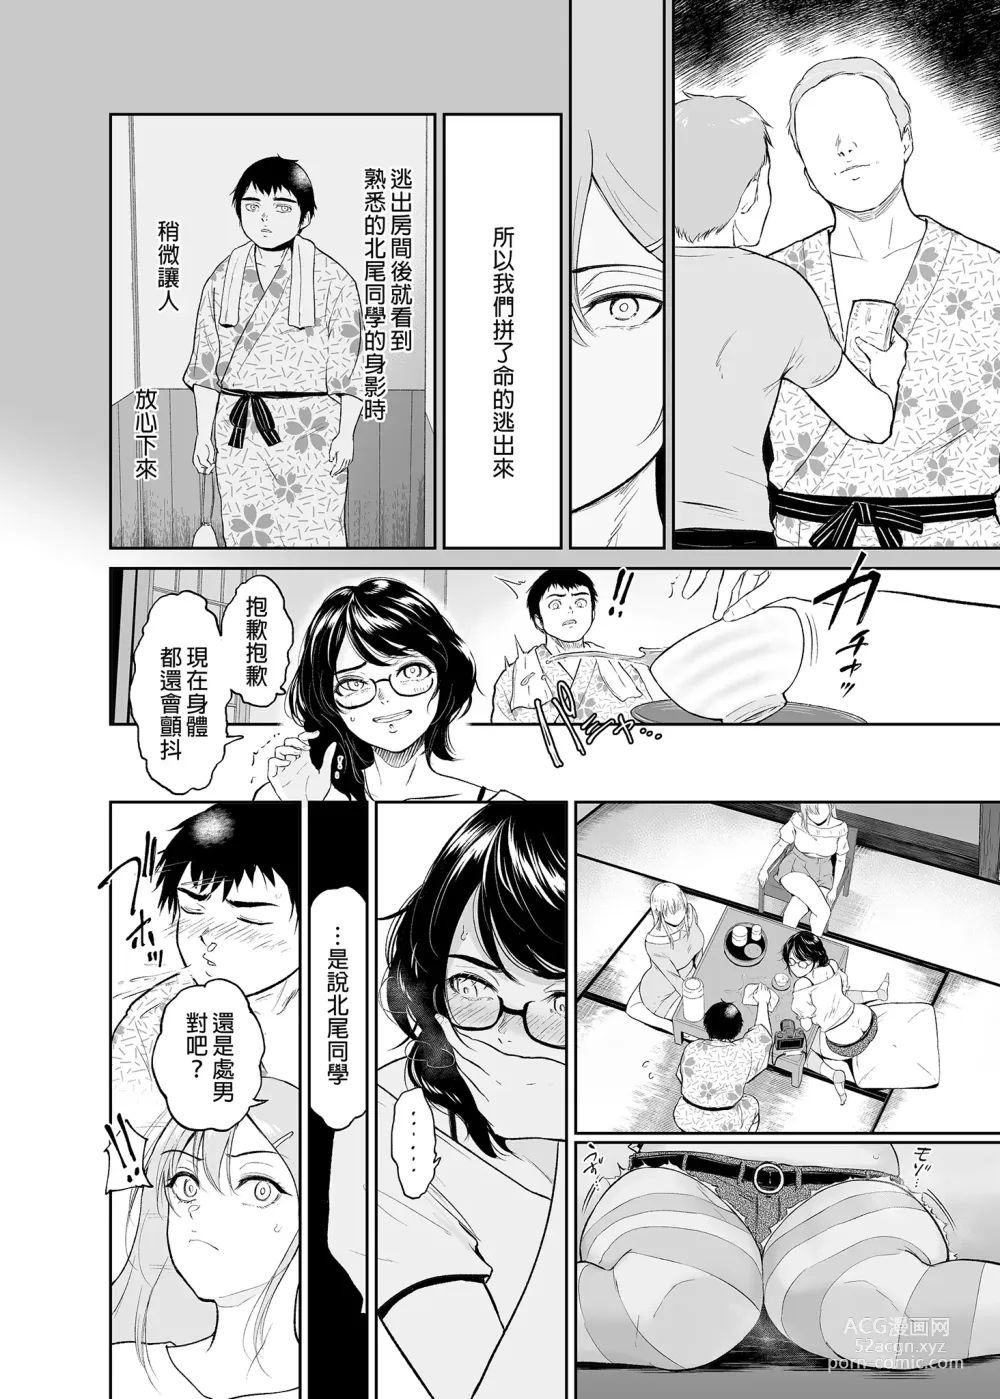 Page 14 of doujinshi 処女を散らす部屋ーキモオタの僕がクラスのギャルの処女喪失に付き合うことになった件